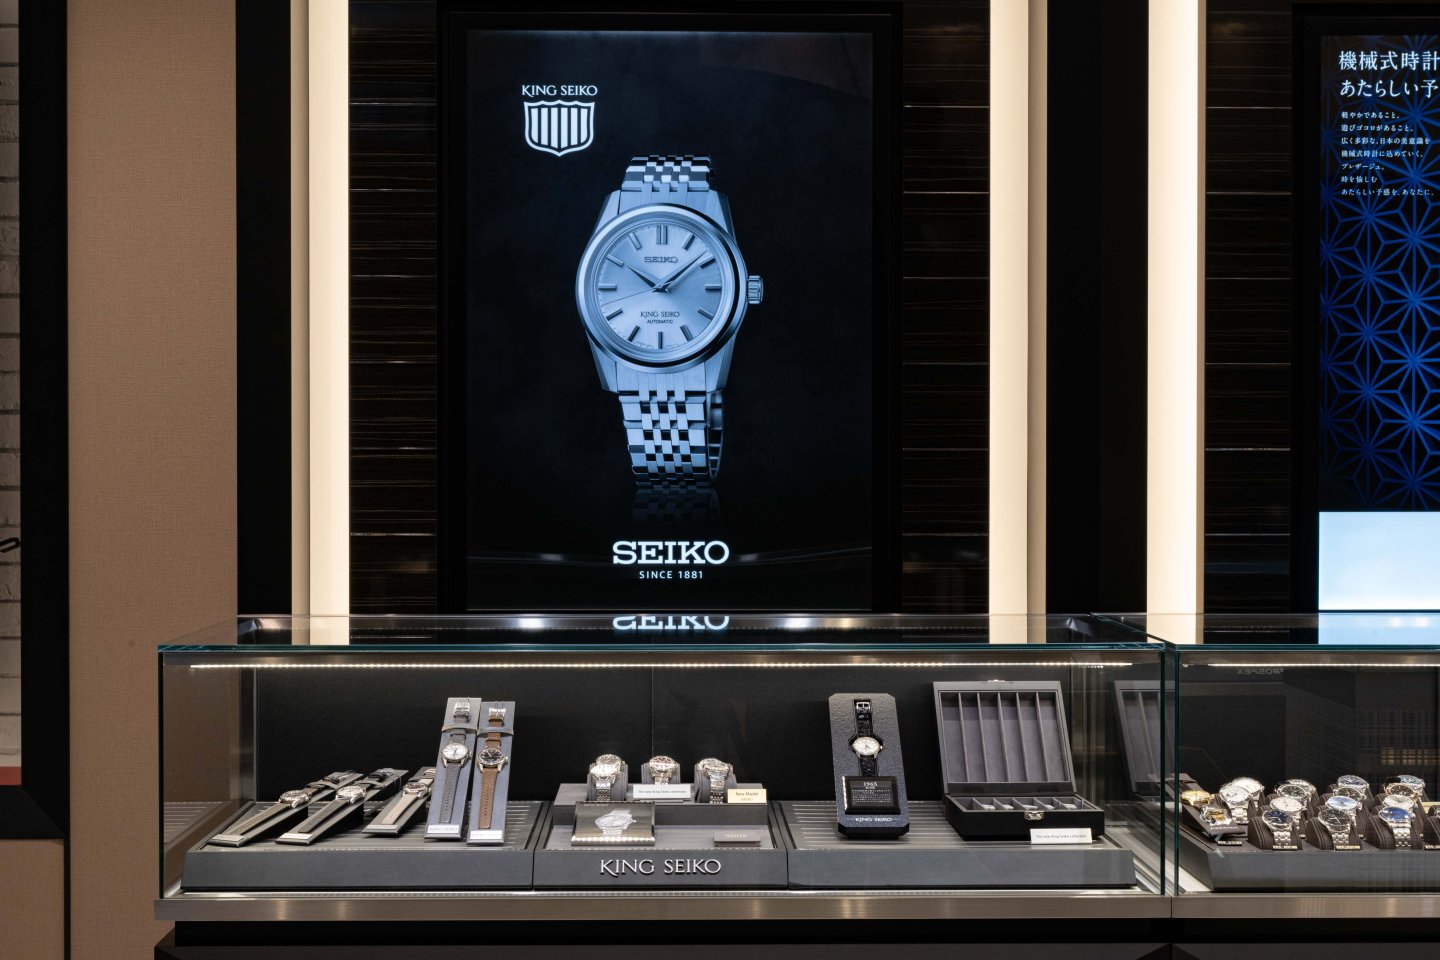 世界最大級の「セイコーブティック」が大阪に誕生～隣接するGSブティック合算により、セイコーウオッチとして 333㎡を超える世界最大の時計売場を実現